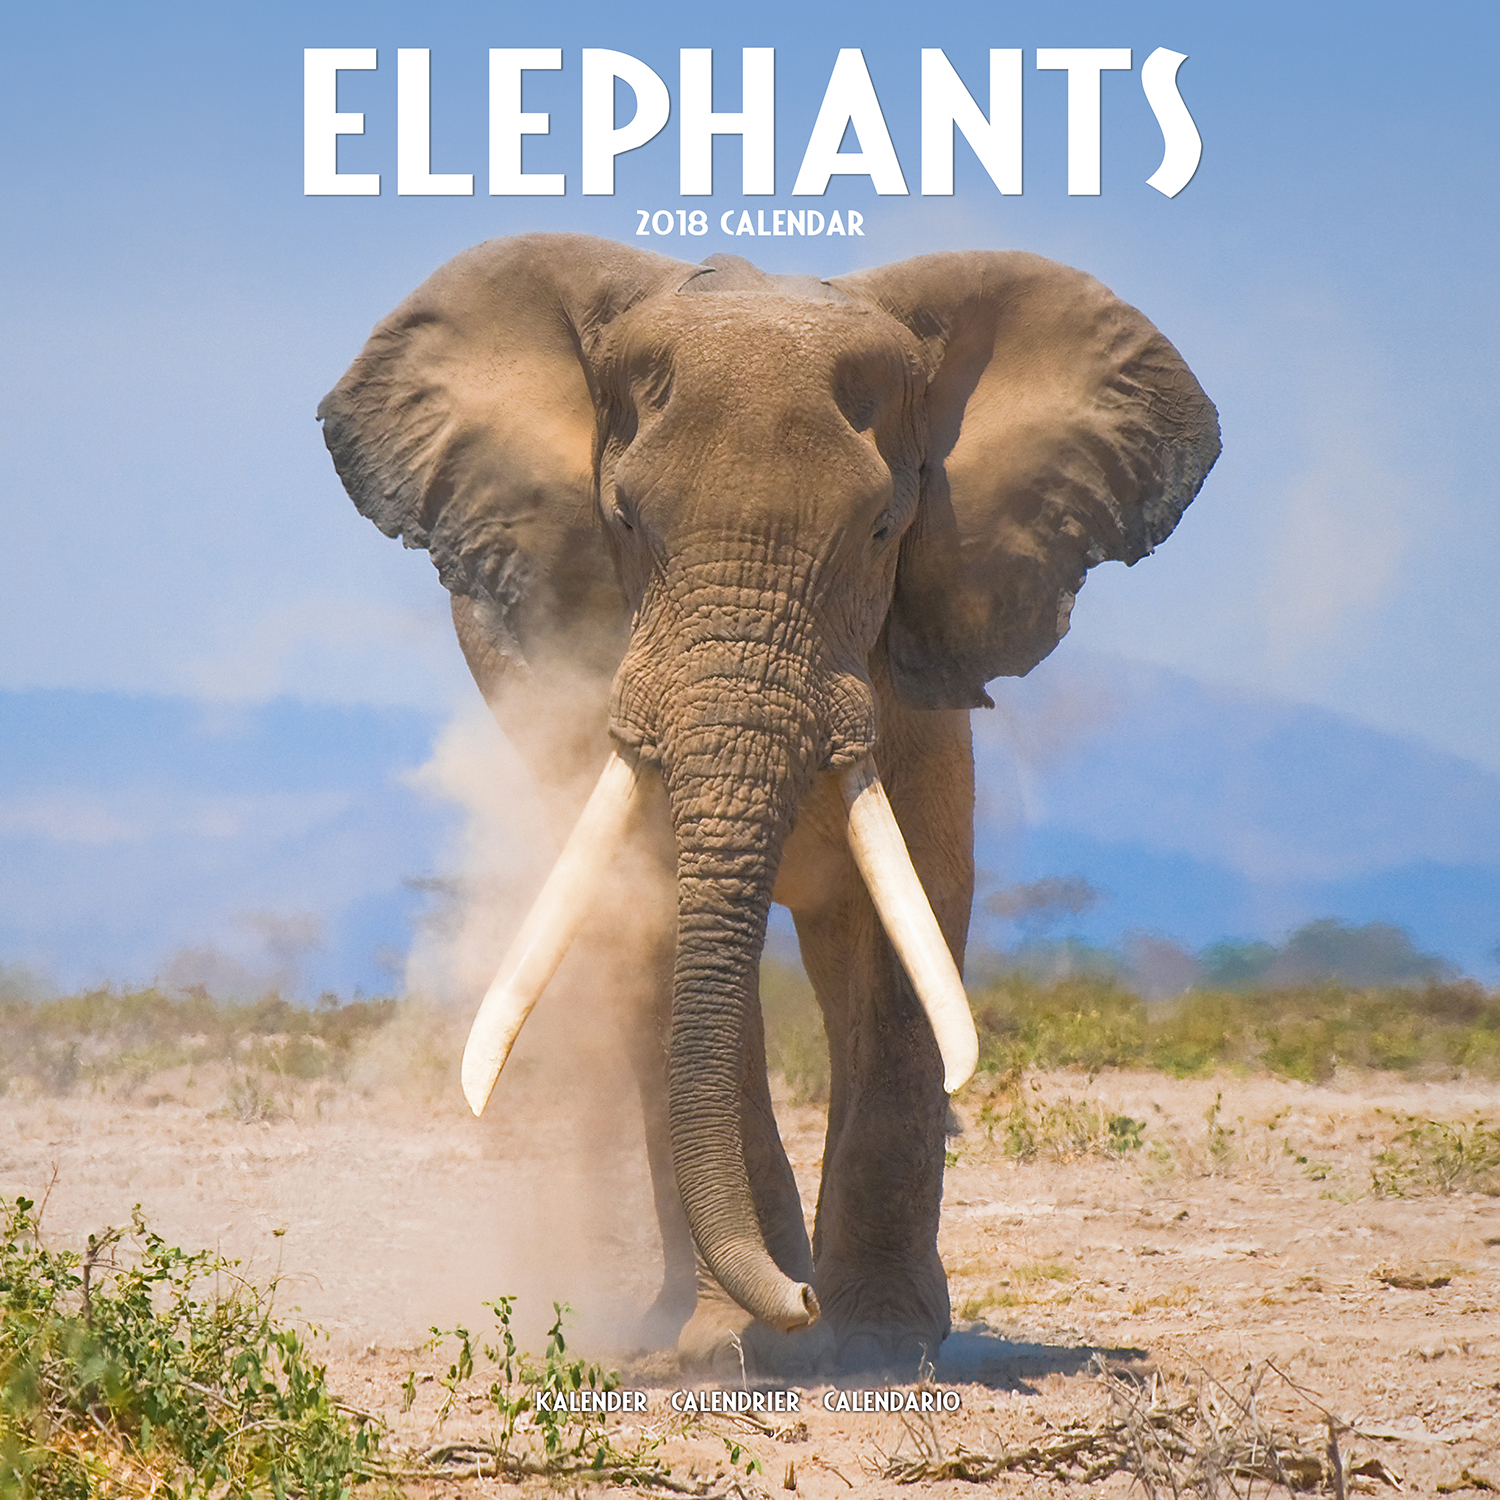 Elephants Calendar 2018 Pet Prints Inc